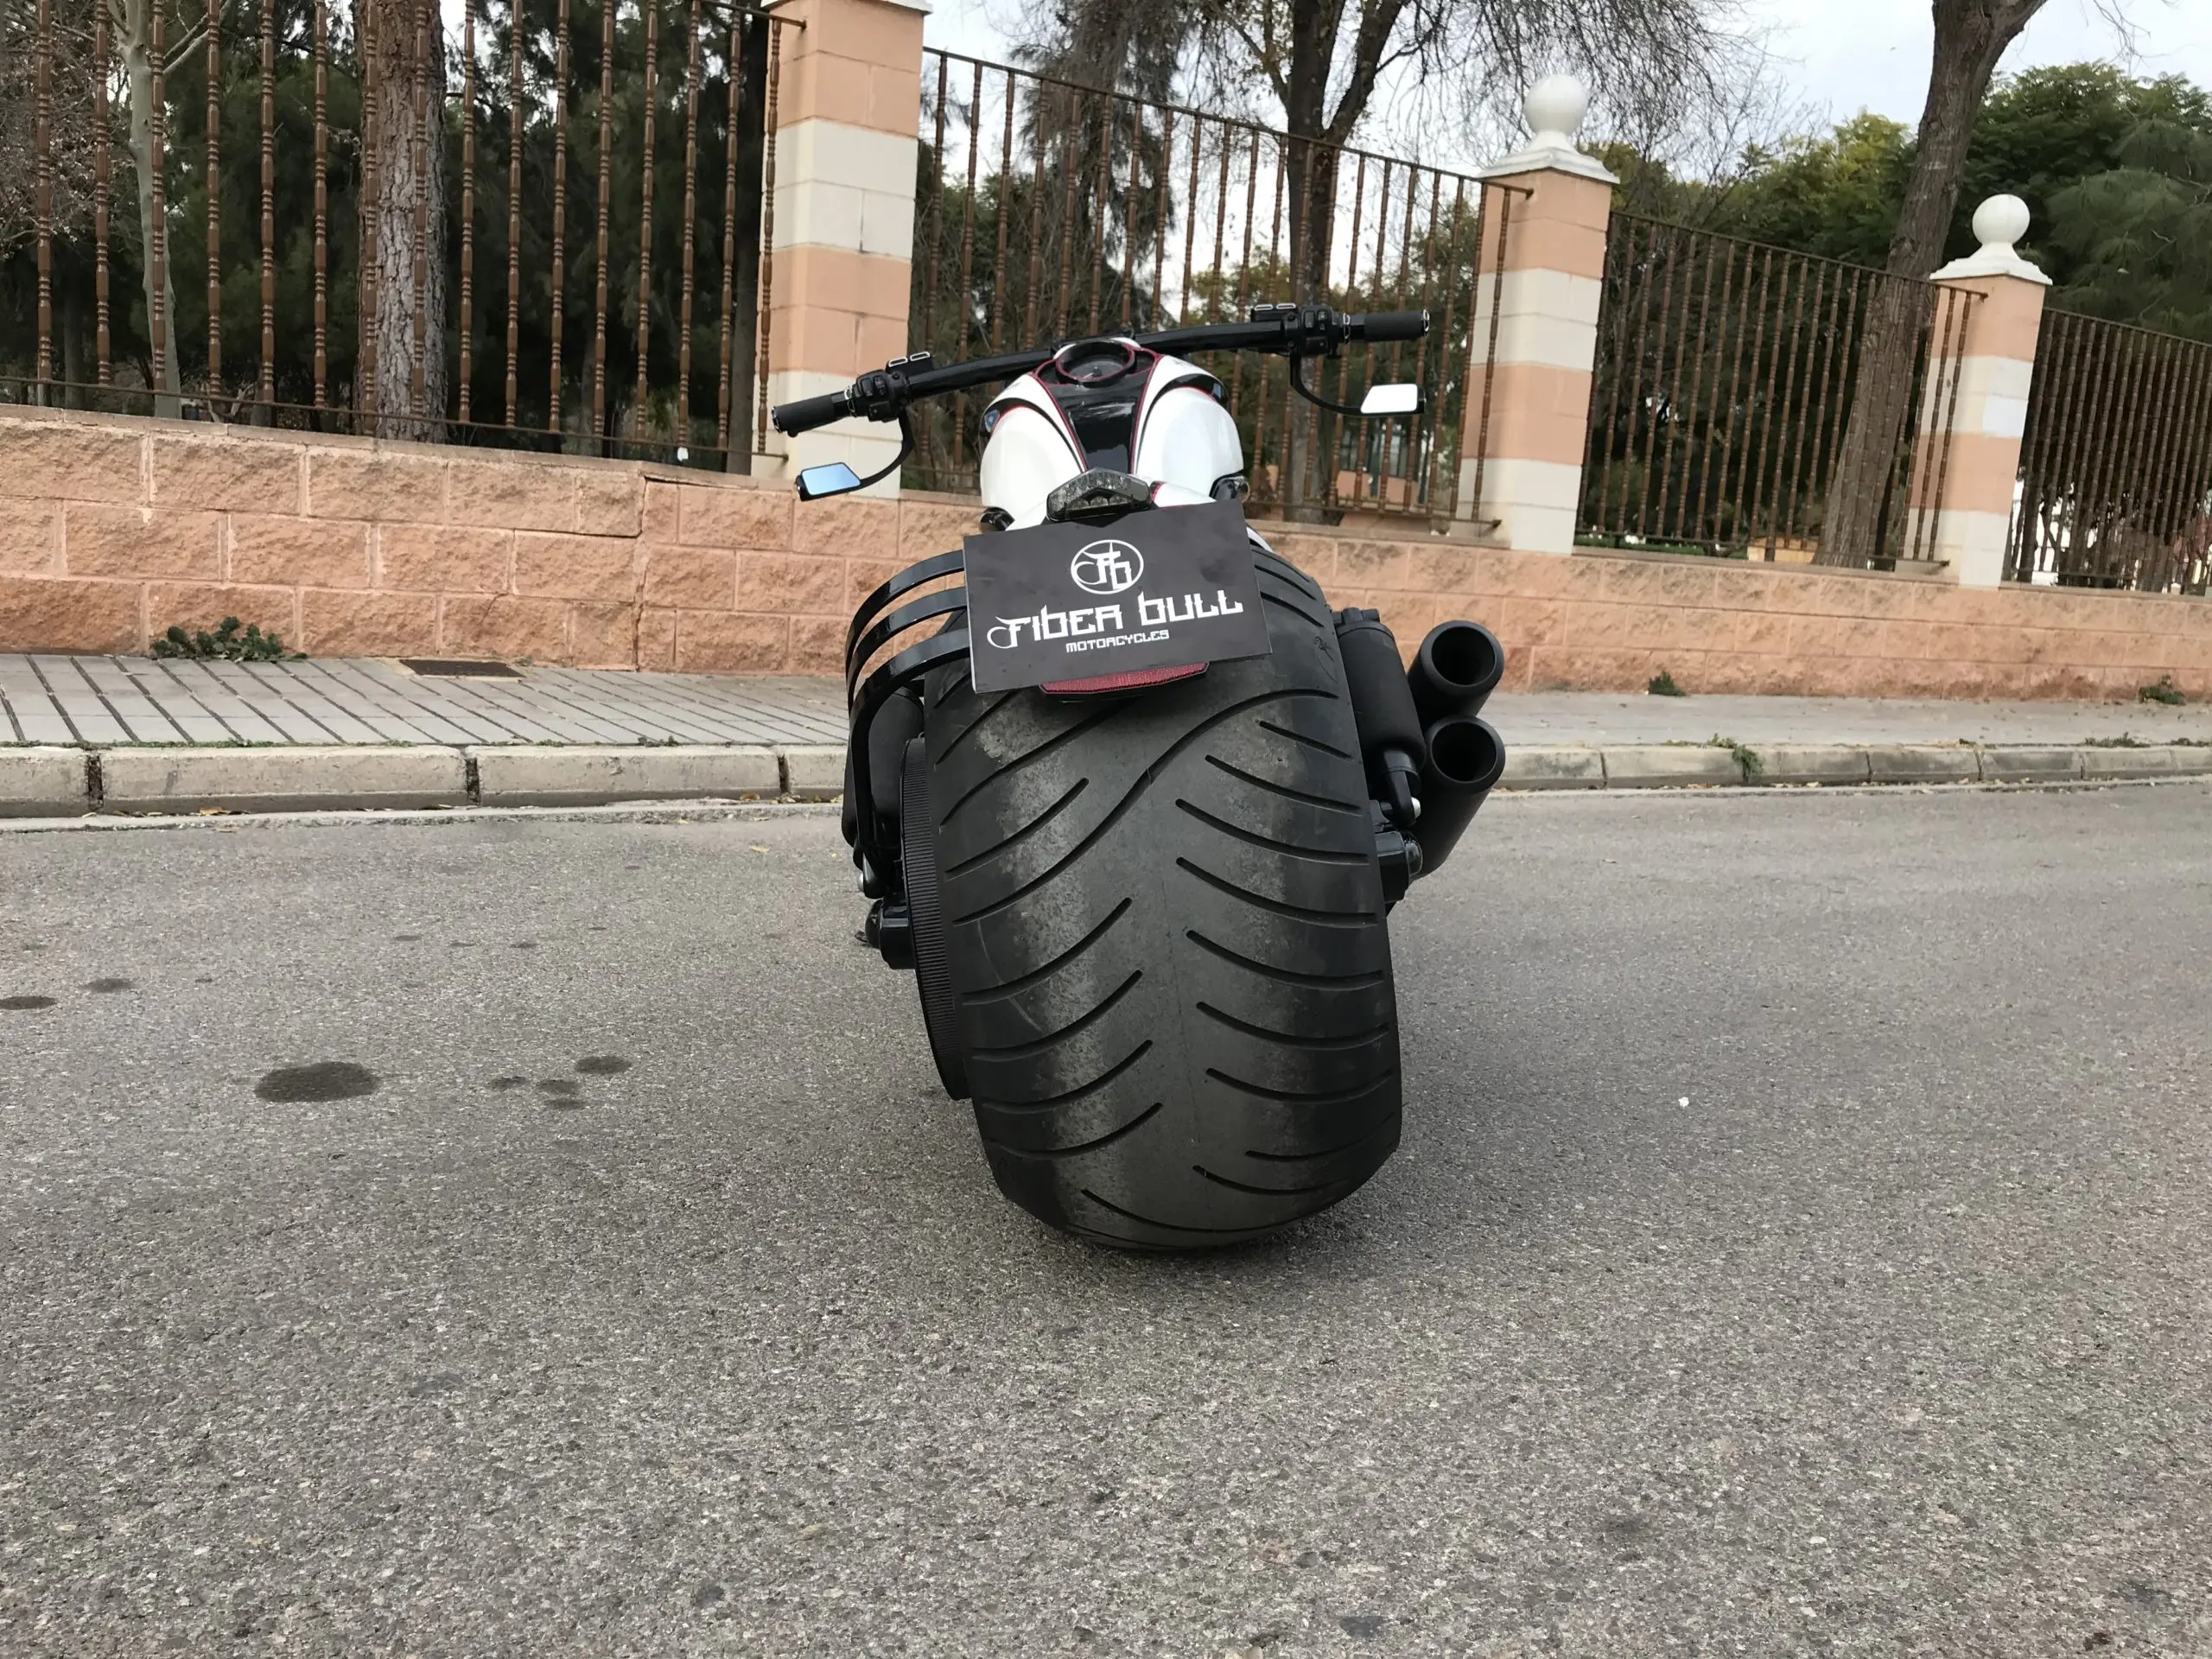 motos de ruedas gordas - Cuál es la Harley más pesada